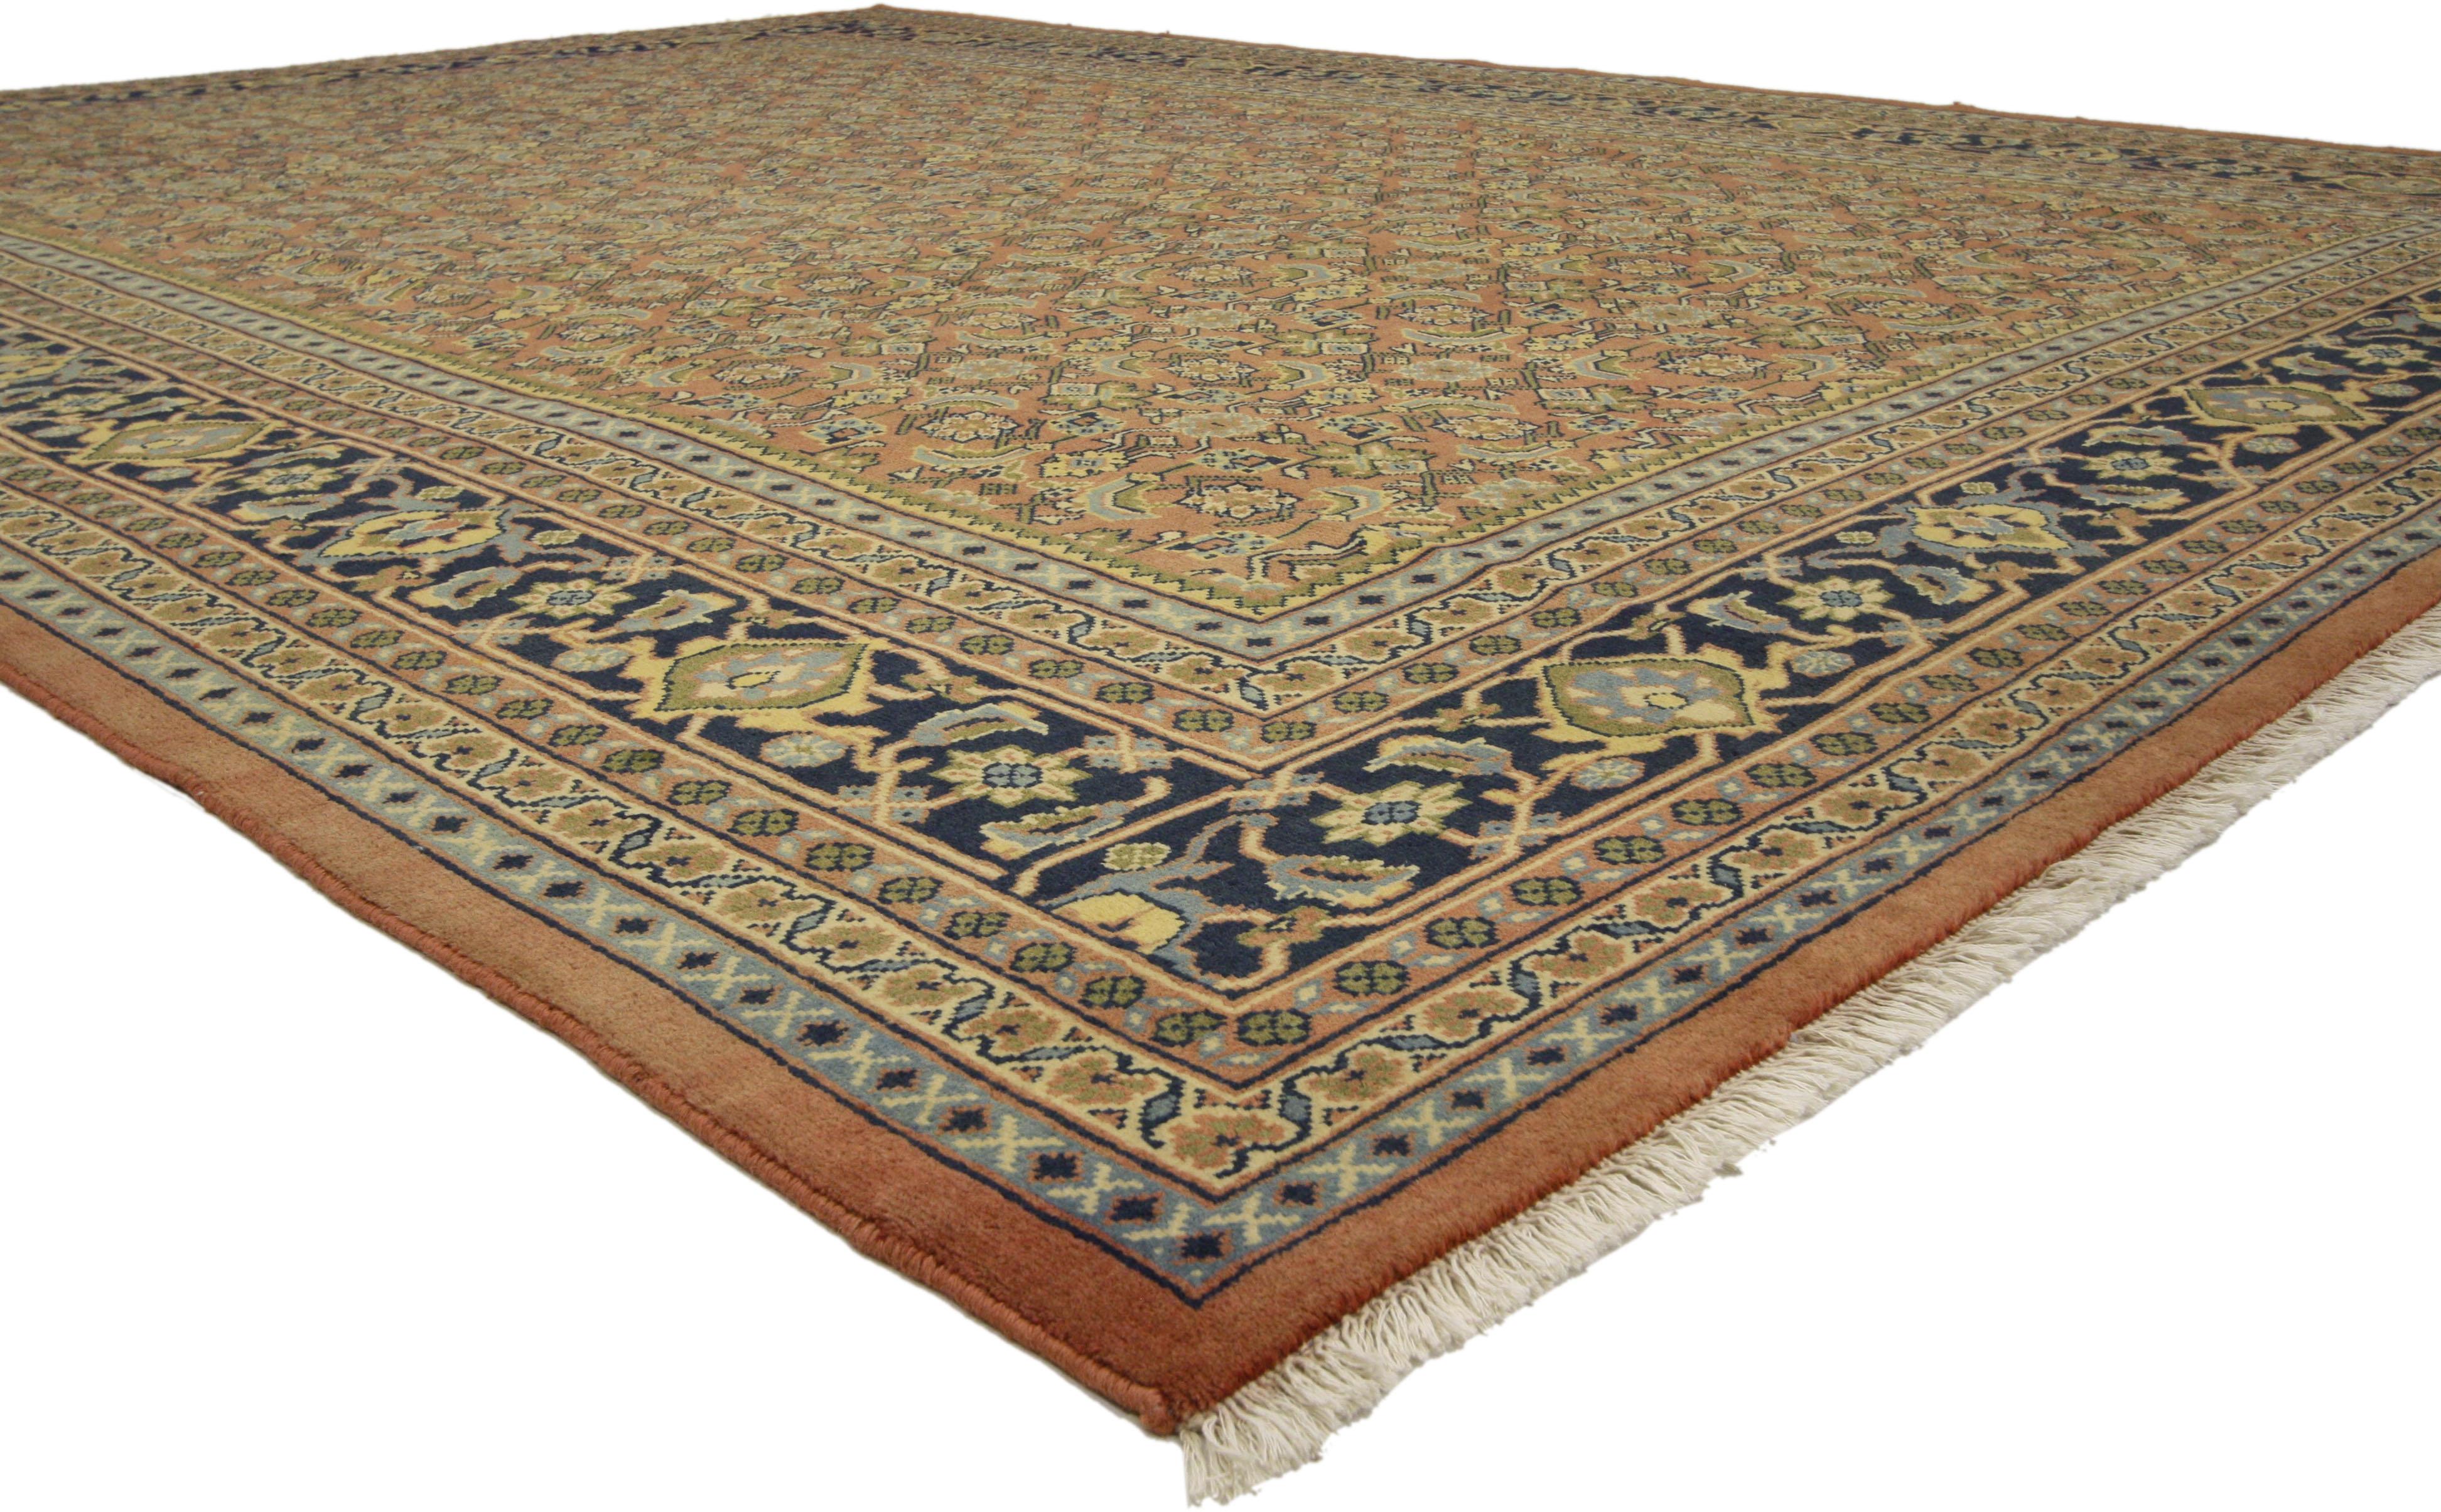 75844 Vintage Persian Mahal Area Rug mit Arts & Crafts Style 09'09 X 13'00 von Esmaili Rugs Collection. Dieser handgeknüpfte persische Mahal-Teppich aus Wolle im Vintage-Stil zeigt ein klassisches Allover-Herati-Muster auf einem abgewetzten Feld.